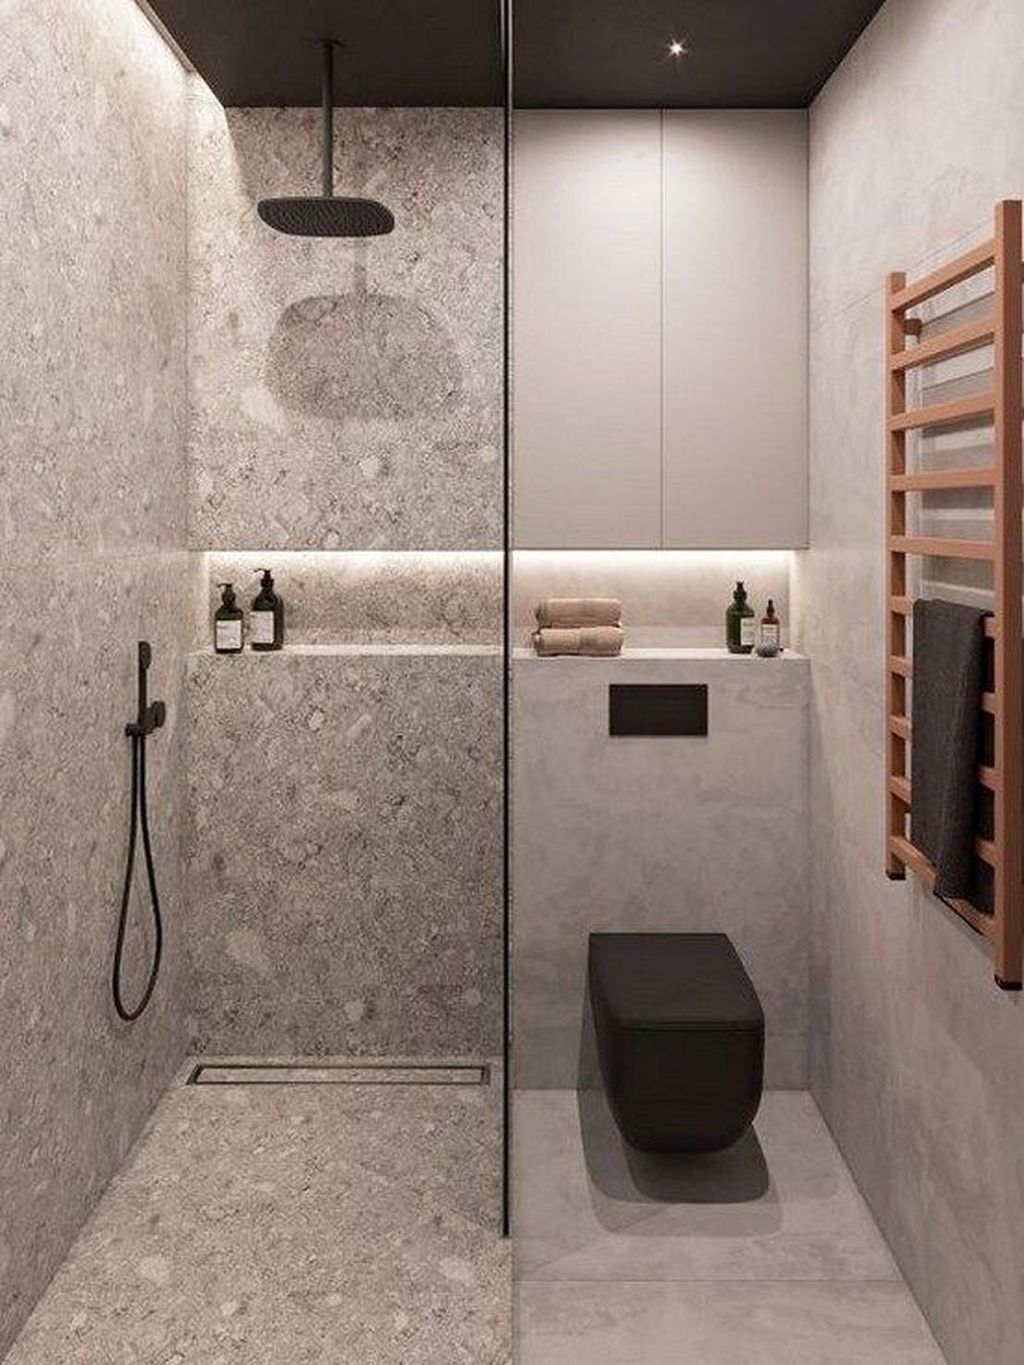 Brilliant Bathroom Design Ideas For Small Space 51